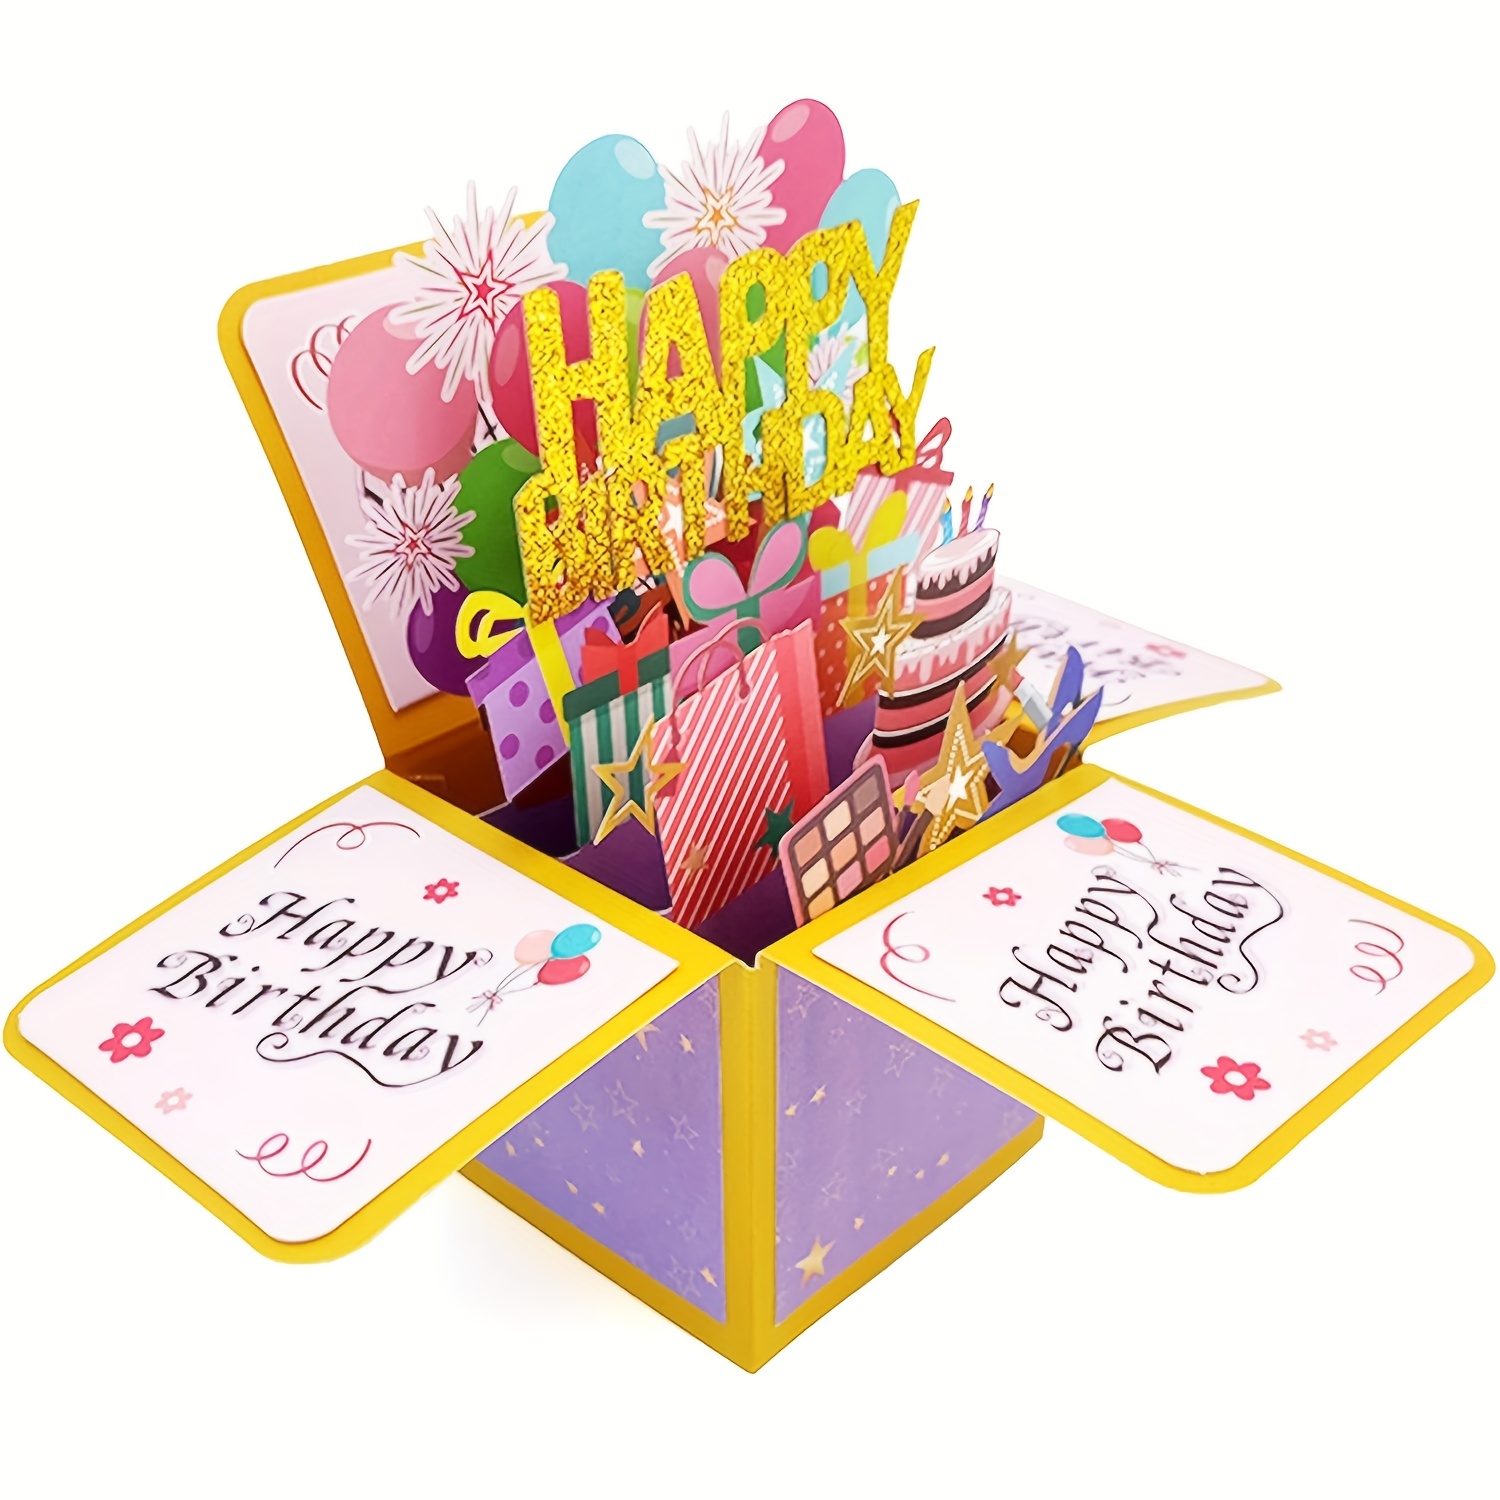 Открытки день рождения 3d Изображения – скачать бесплатно на Freepik